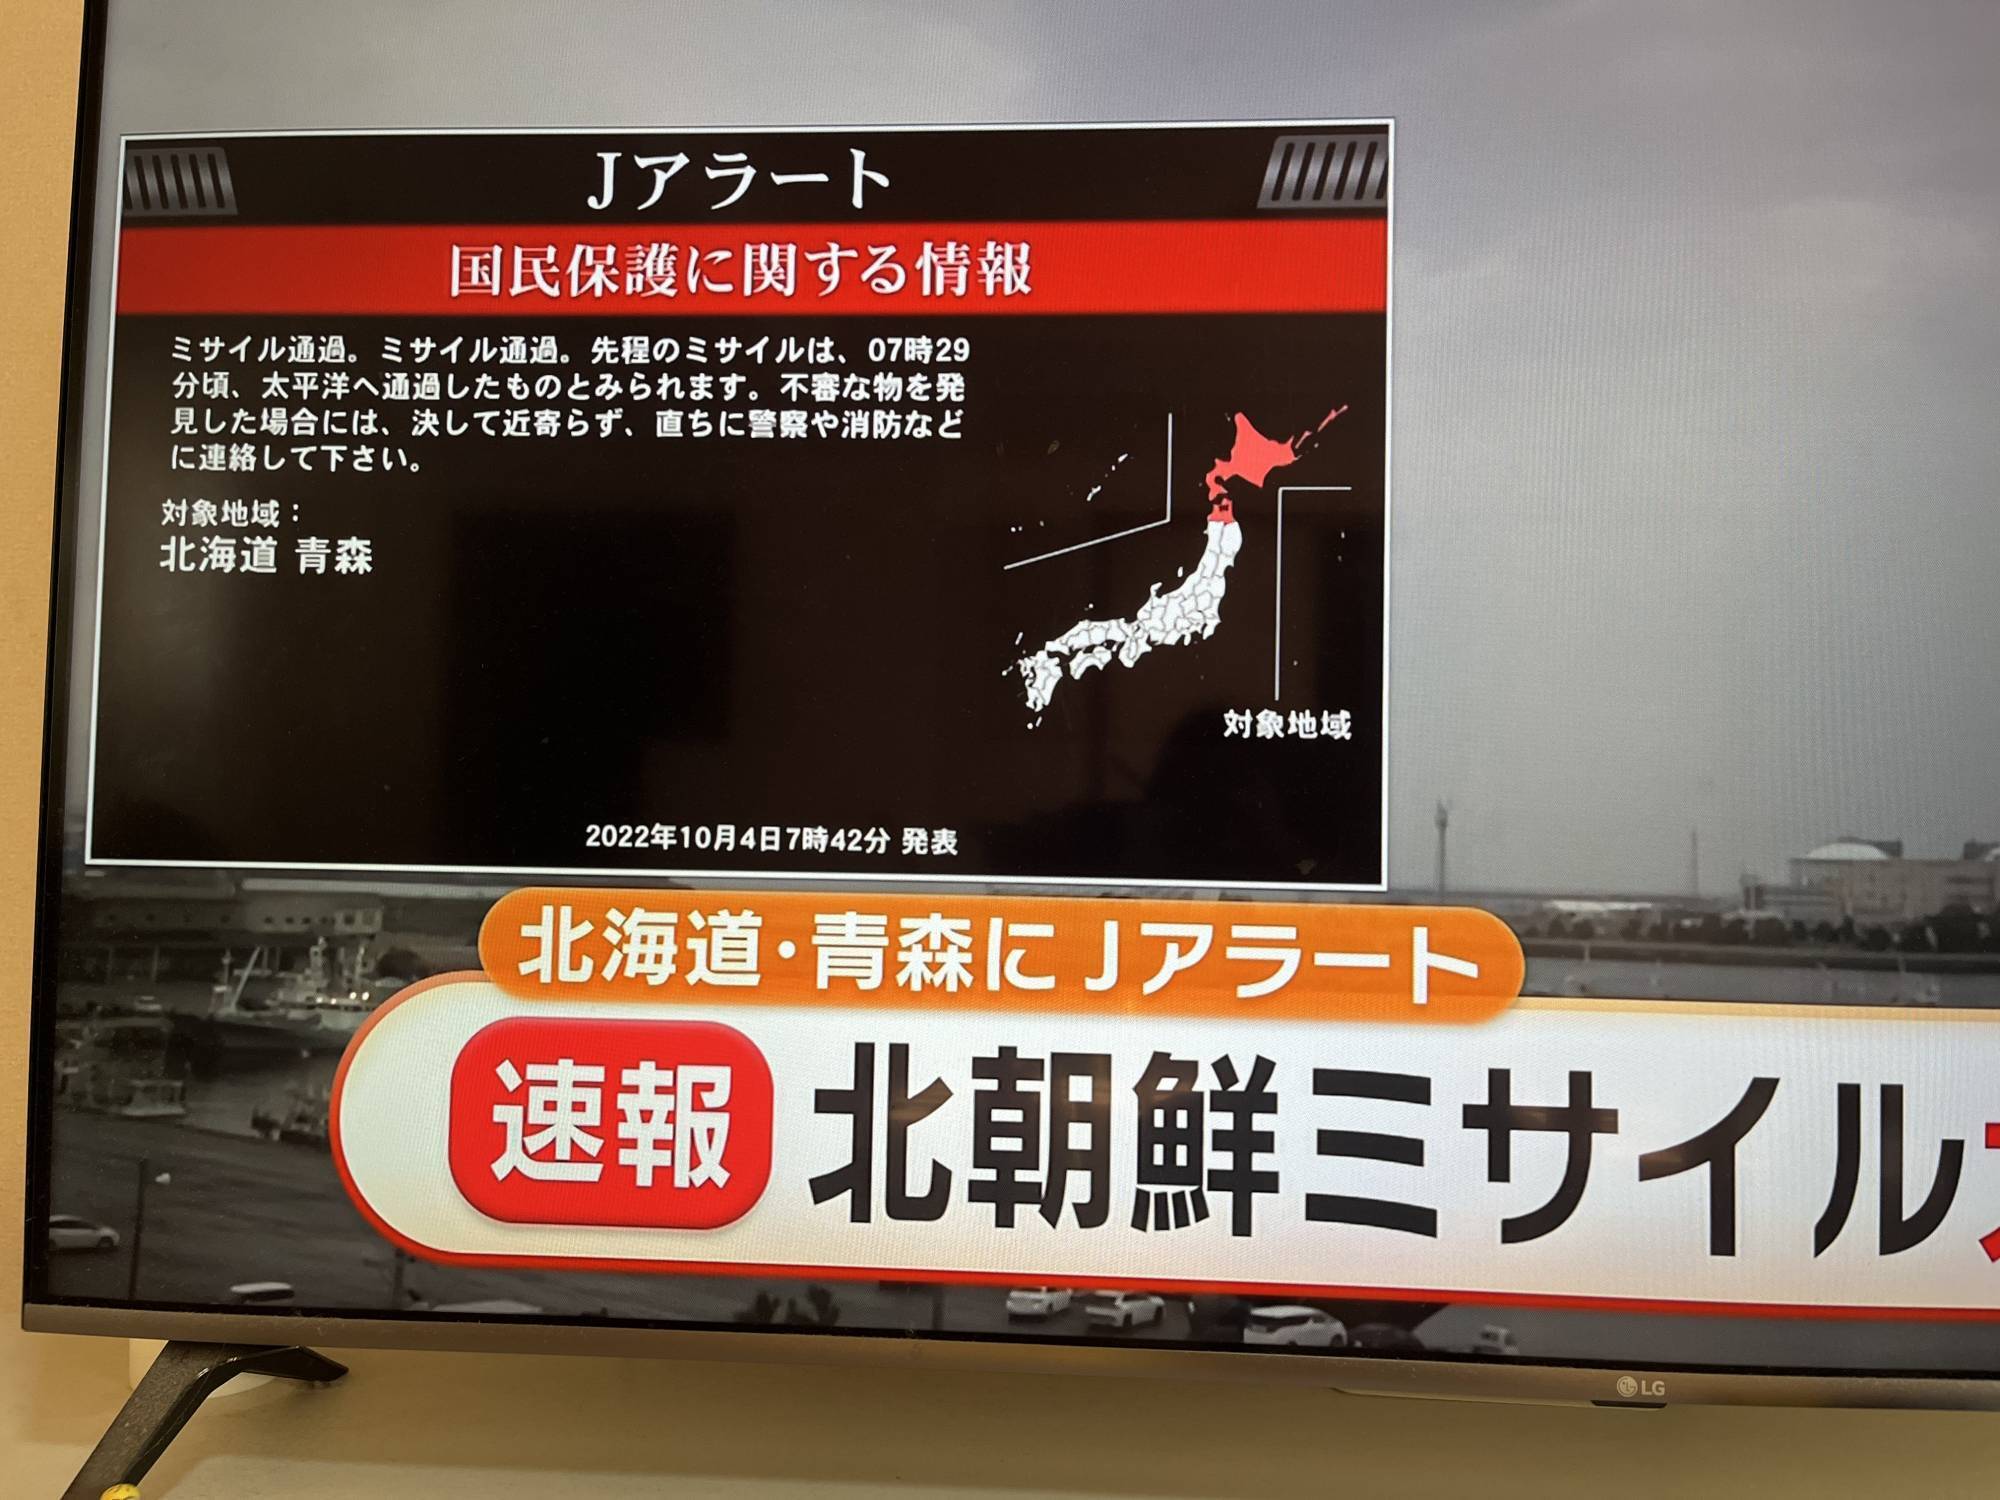 Северная Корея запустила баллистическую ракету над Японией: была объявлена воздушная тревога. Фото и видео